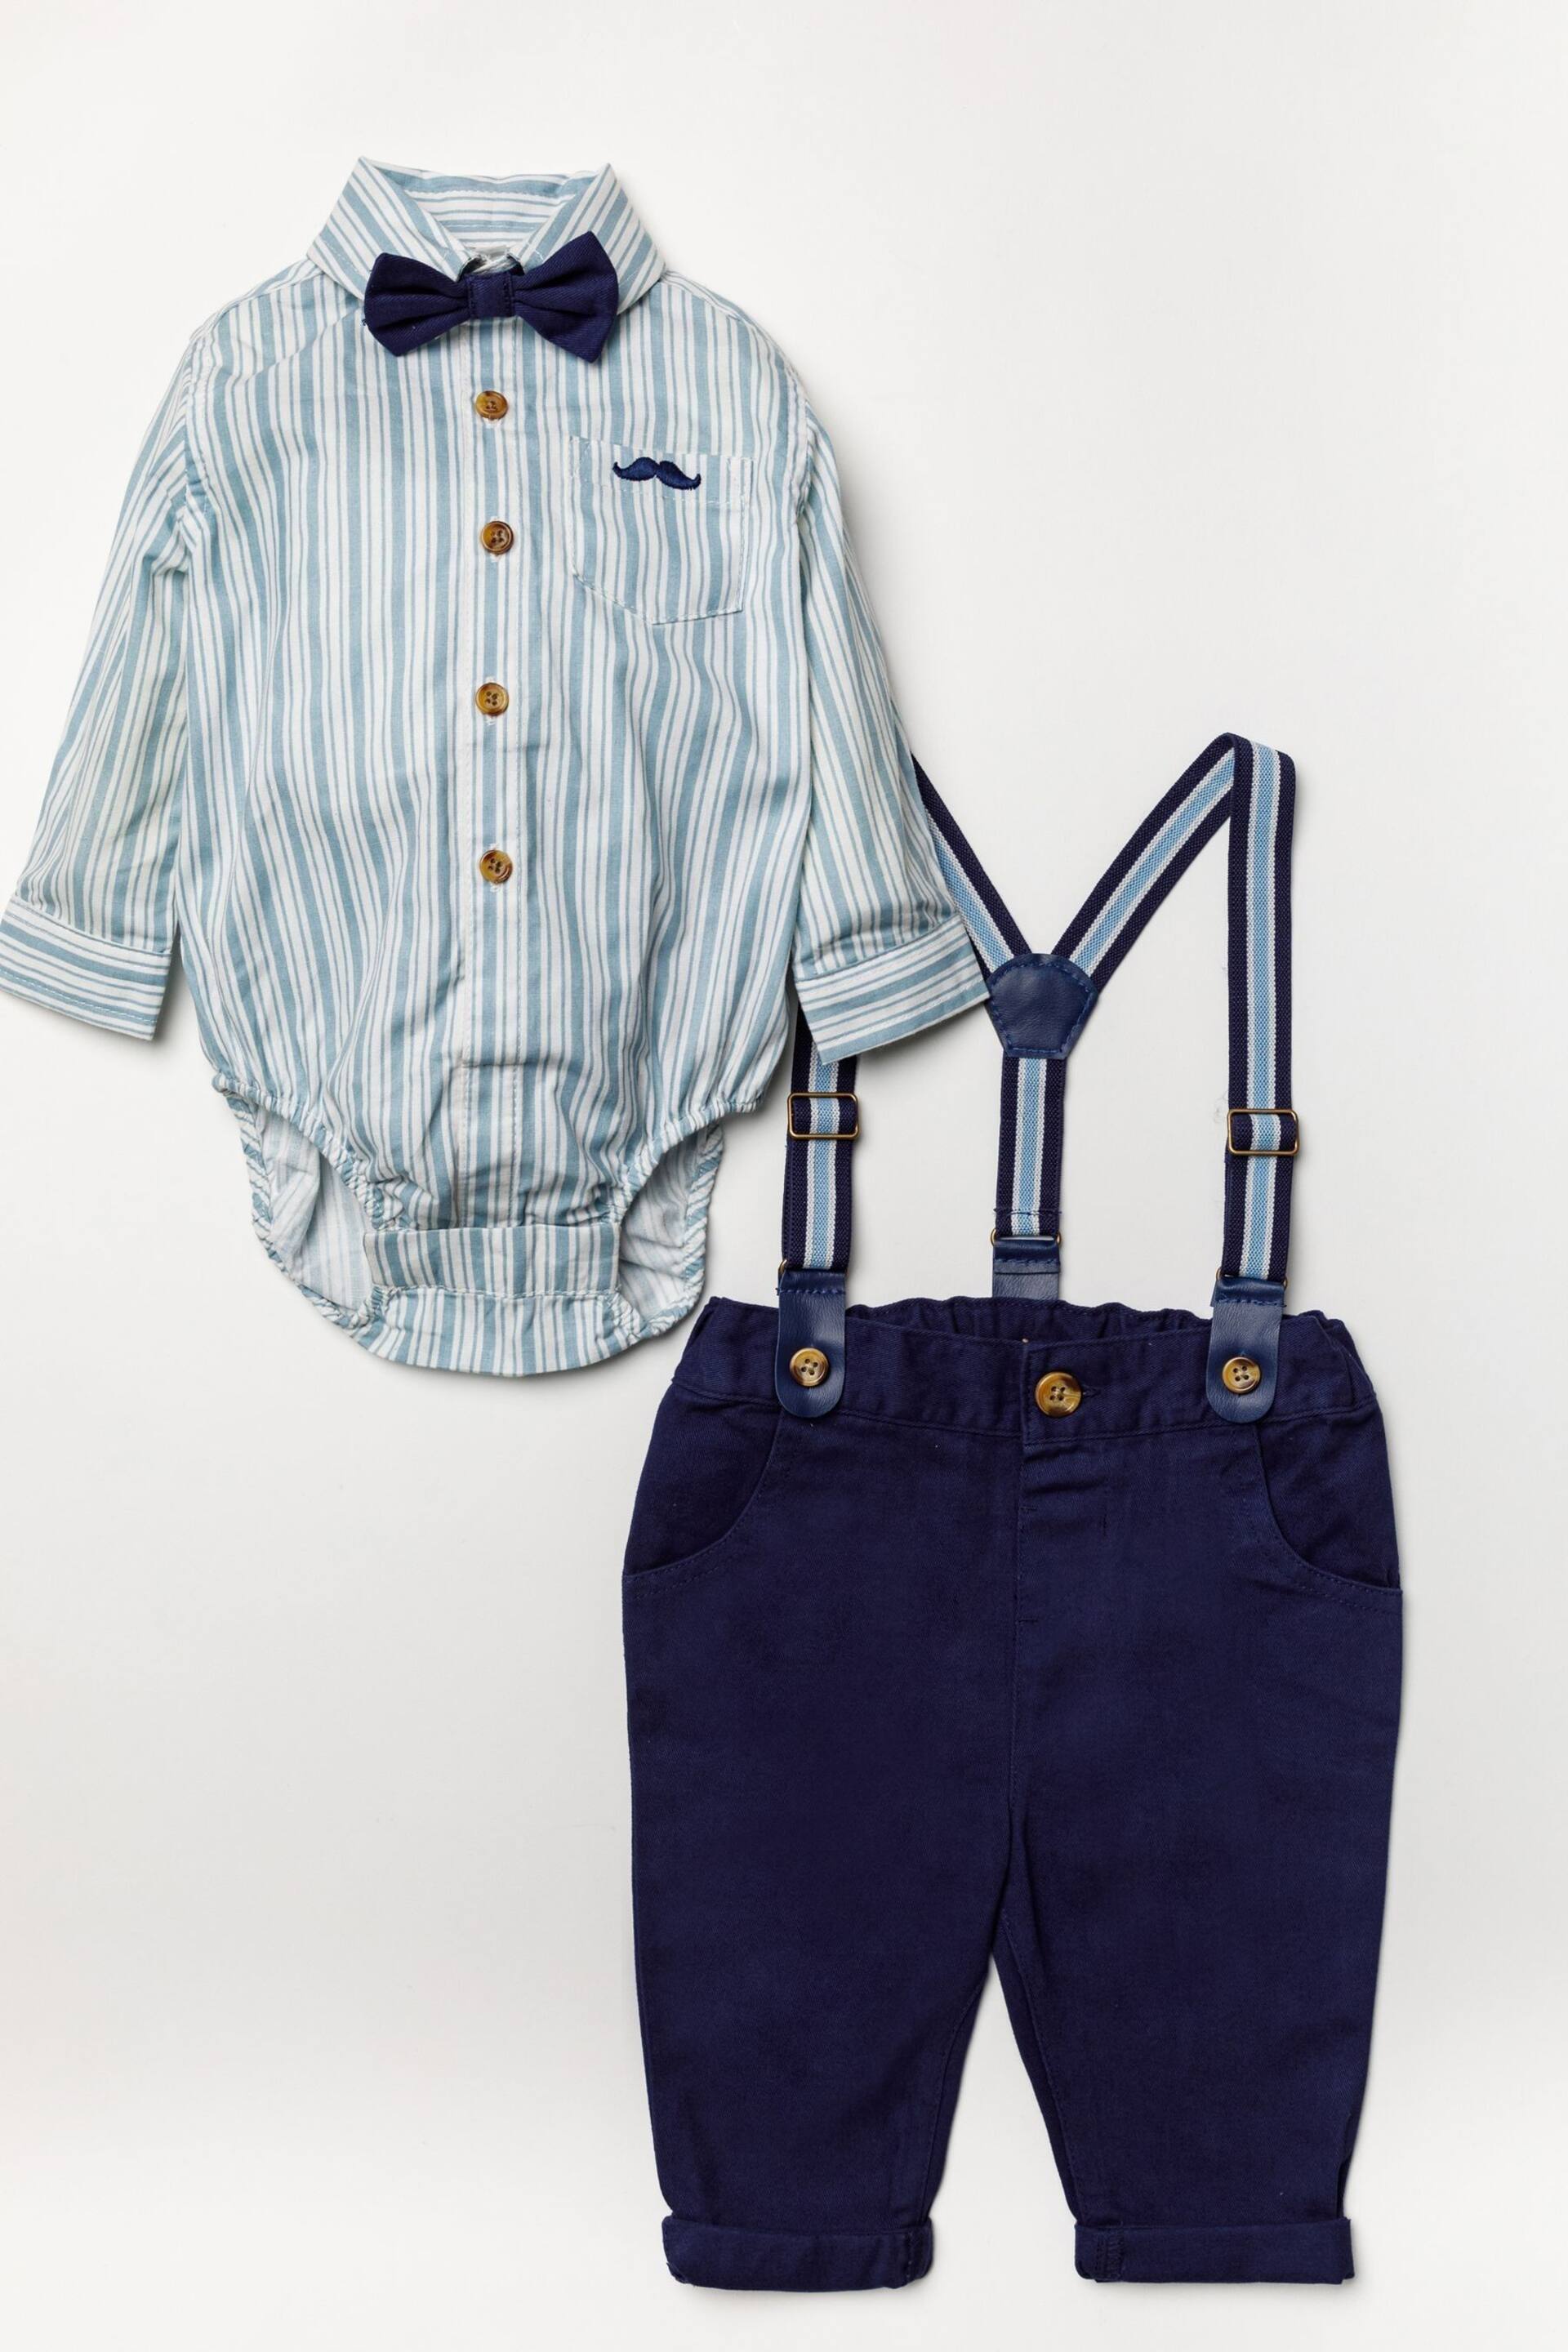 Little Gent Blue Shirt Bodysuit, Bowtie, Trouser And Braces 3 Piece Baby Set - Image 1 of 5